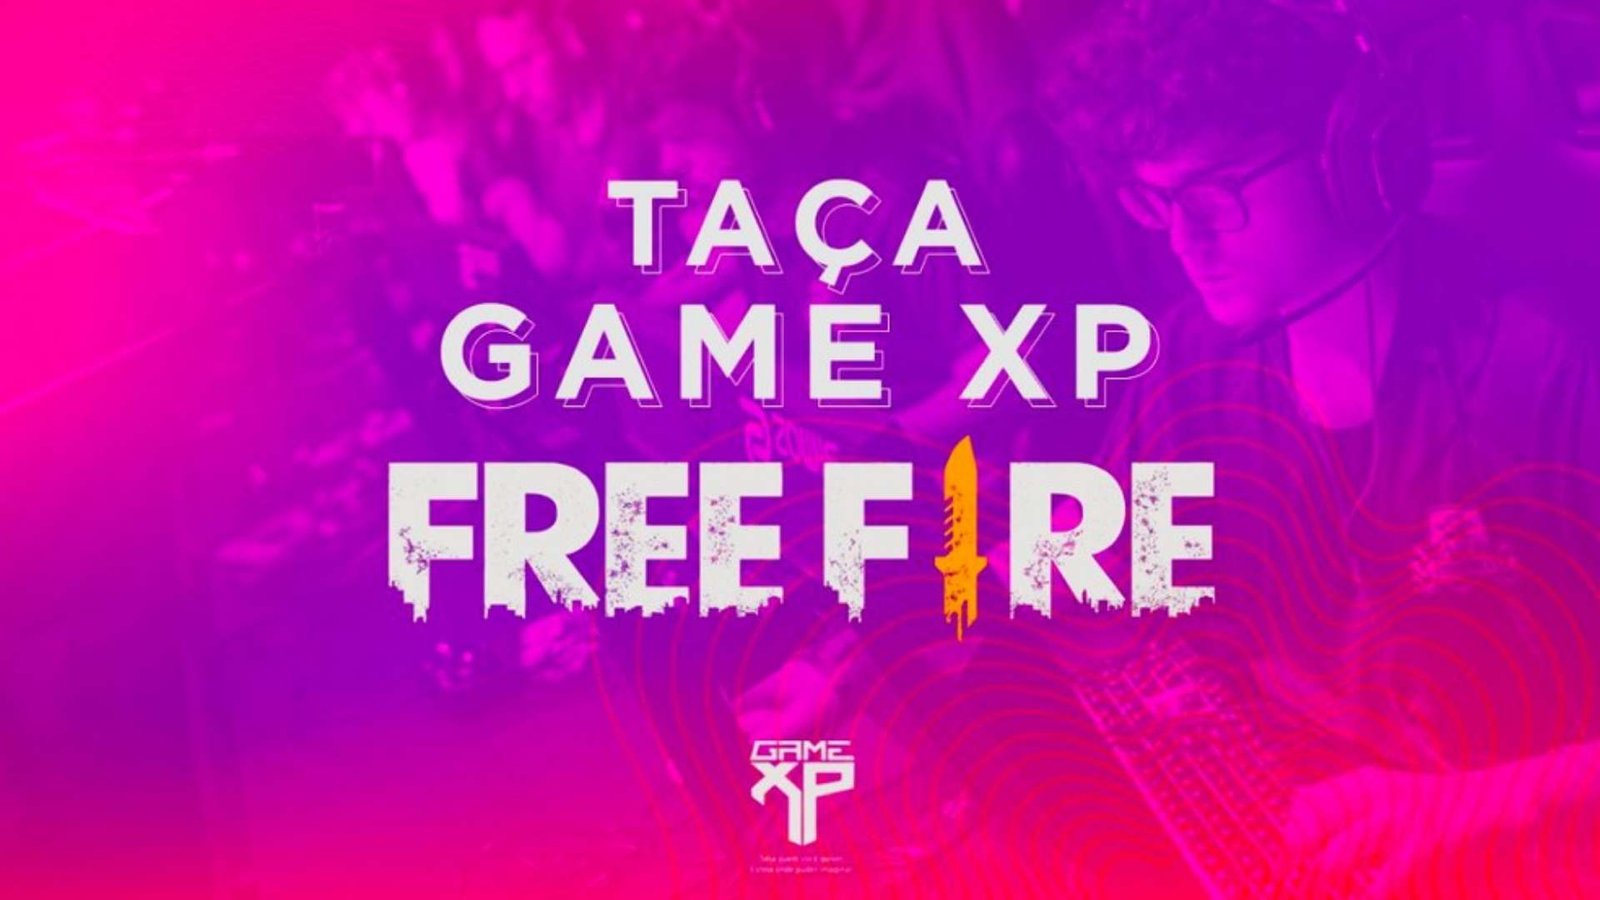 Game XP 2021 - Taça Game XP Free Fire